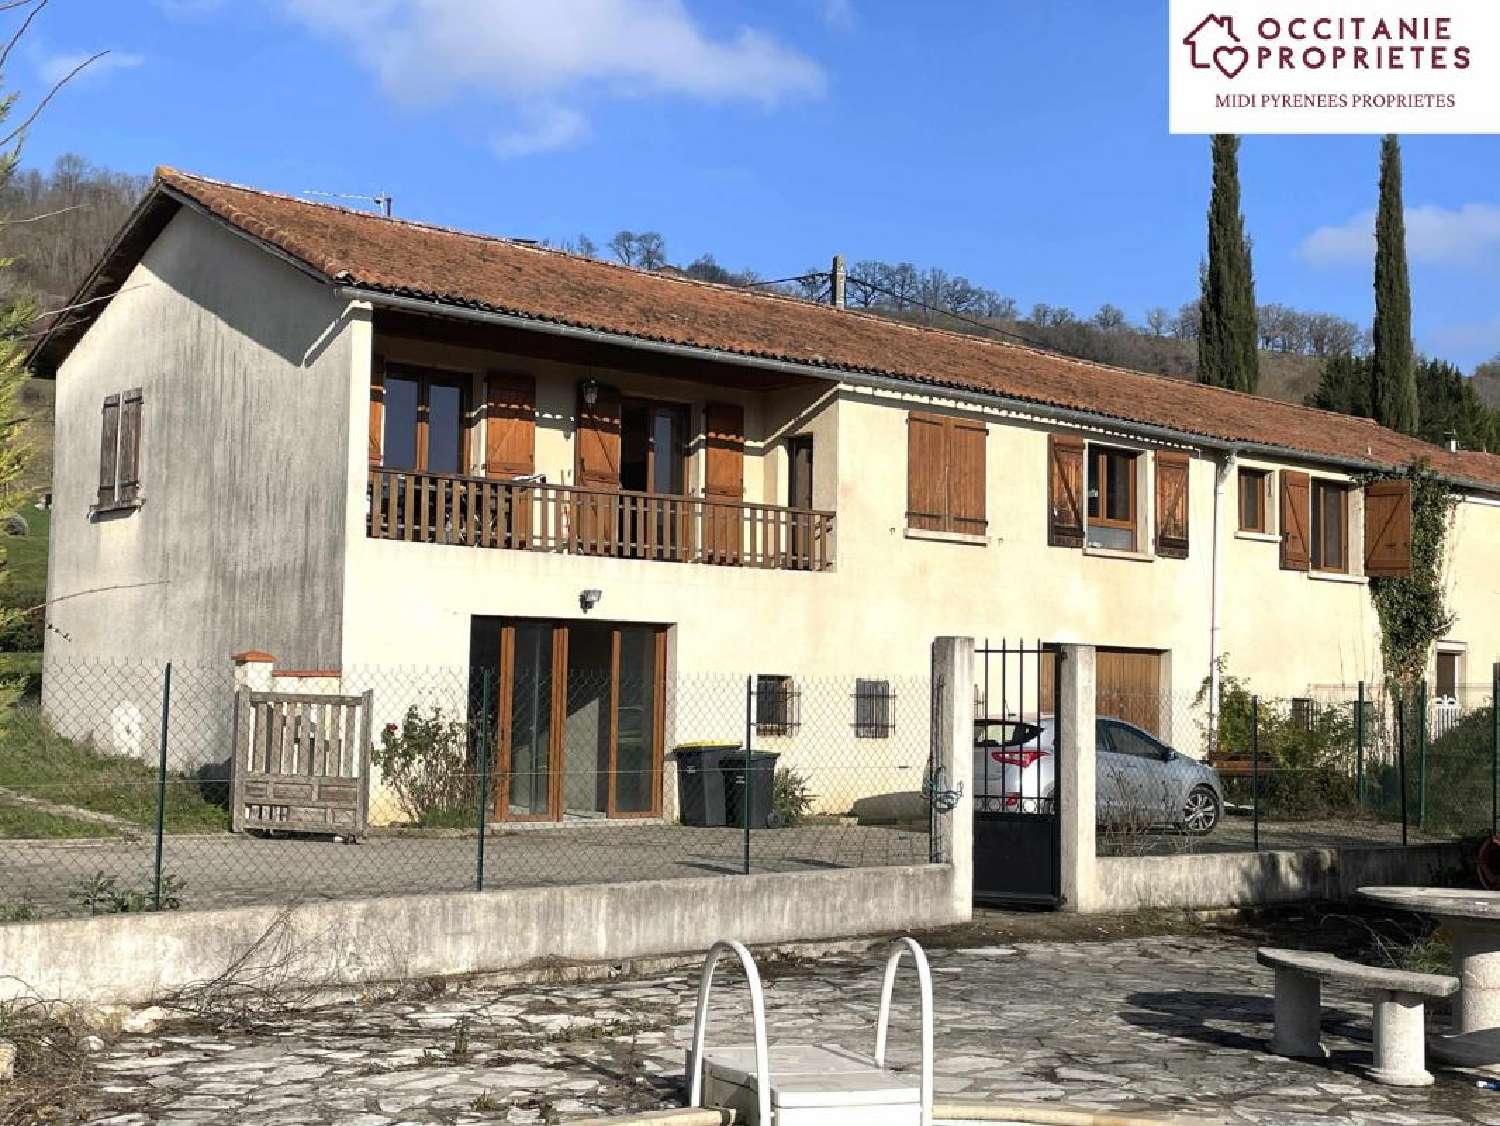  à vendre maison de village Sabarat Ariège 1